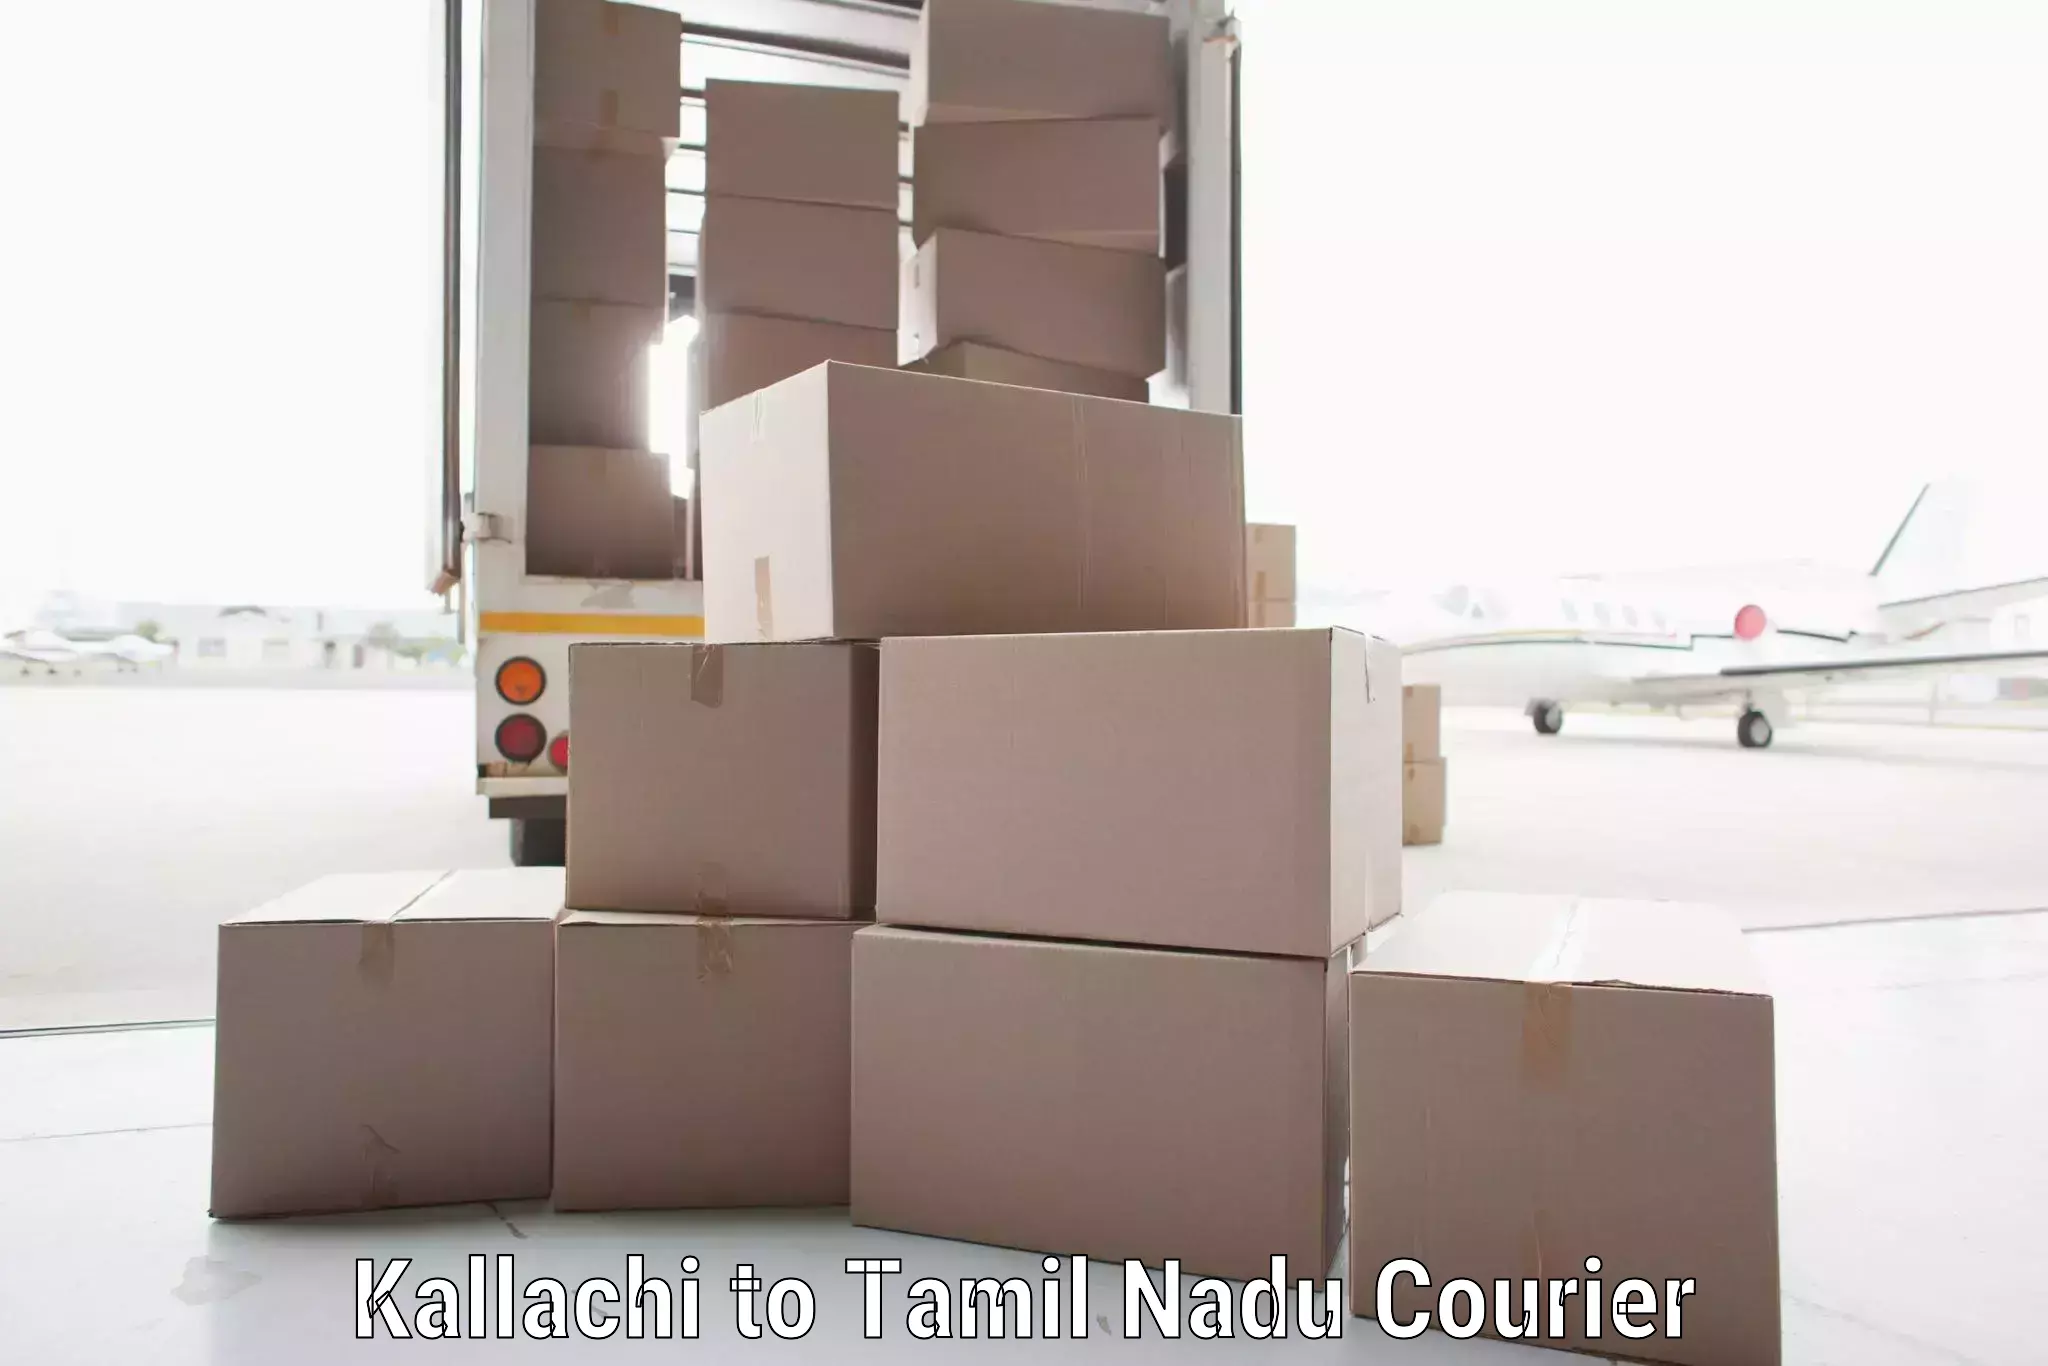 Courier service comparison Kallachi to Kanchipuram